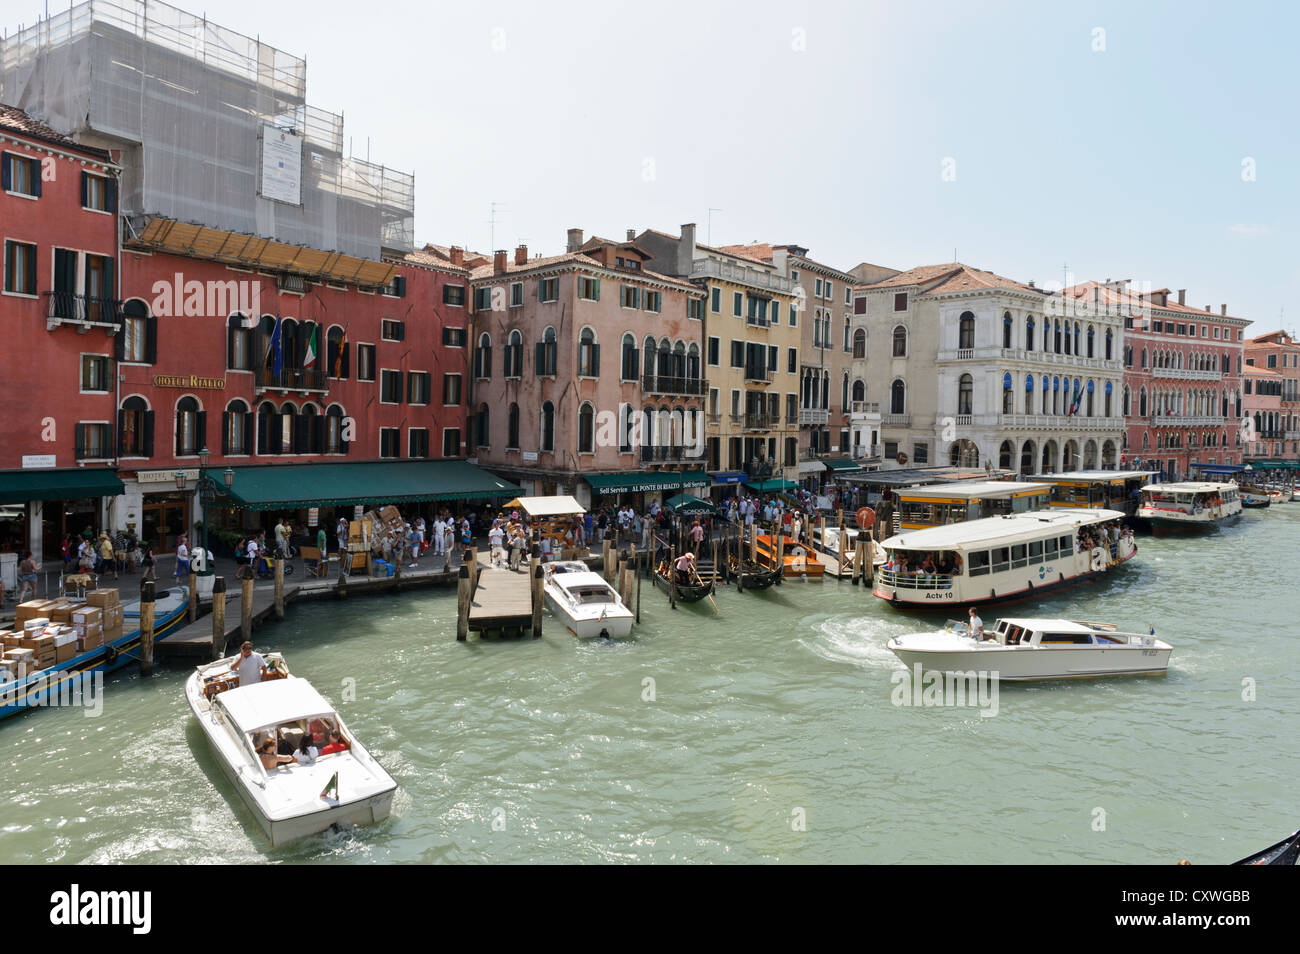 La circulation de l'eau sur le Grand Canal, Venise, Italie. Banque D'Images